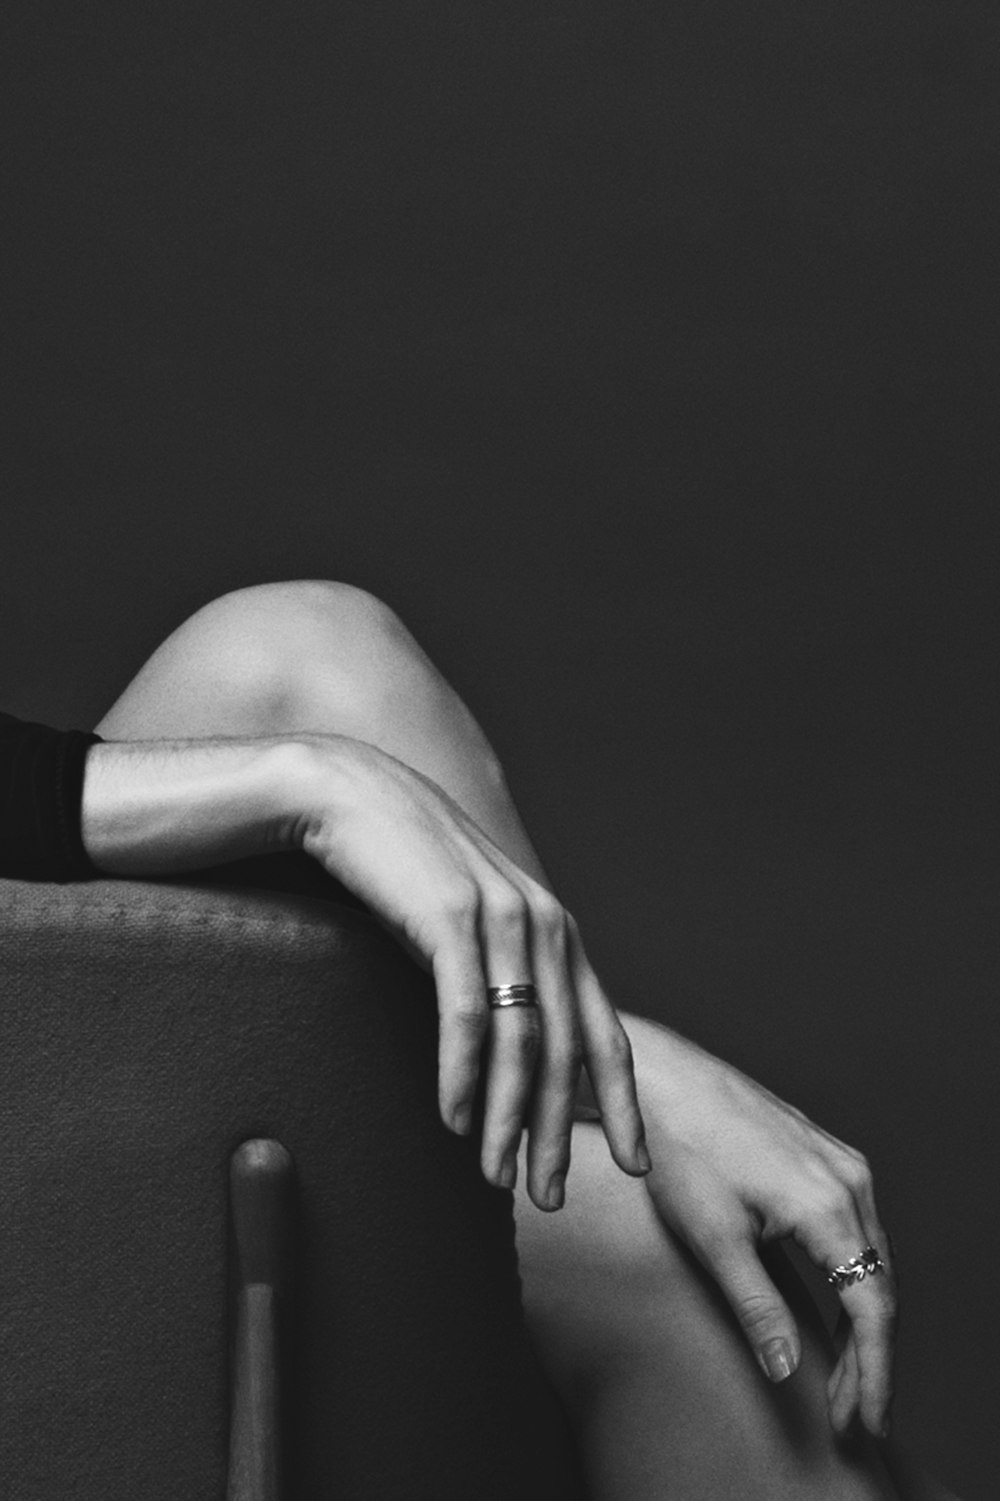 Photographie en niveaux de gris d’une personne assise portant des bagues à deux mains